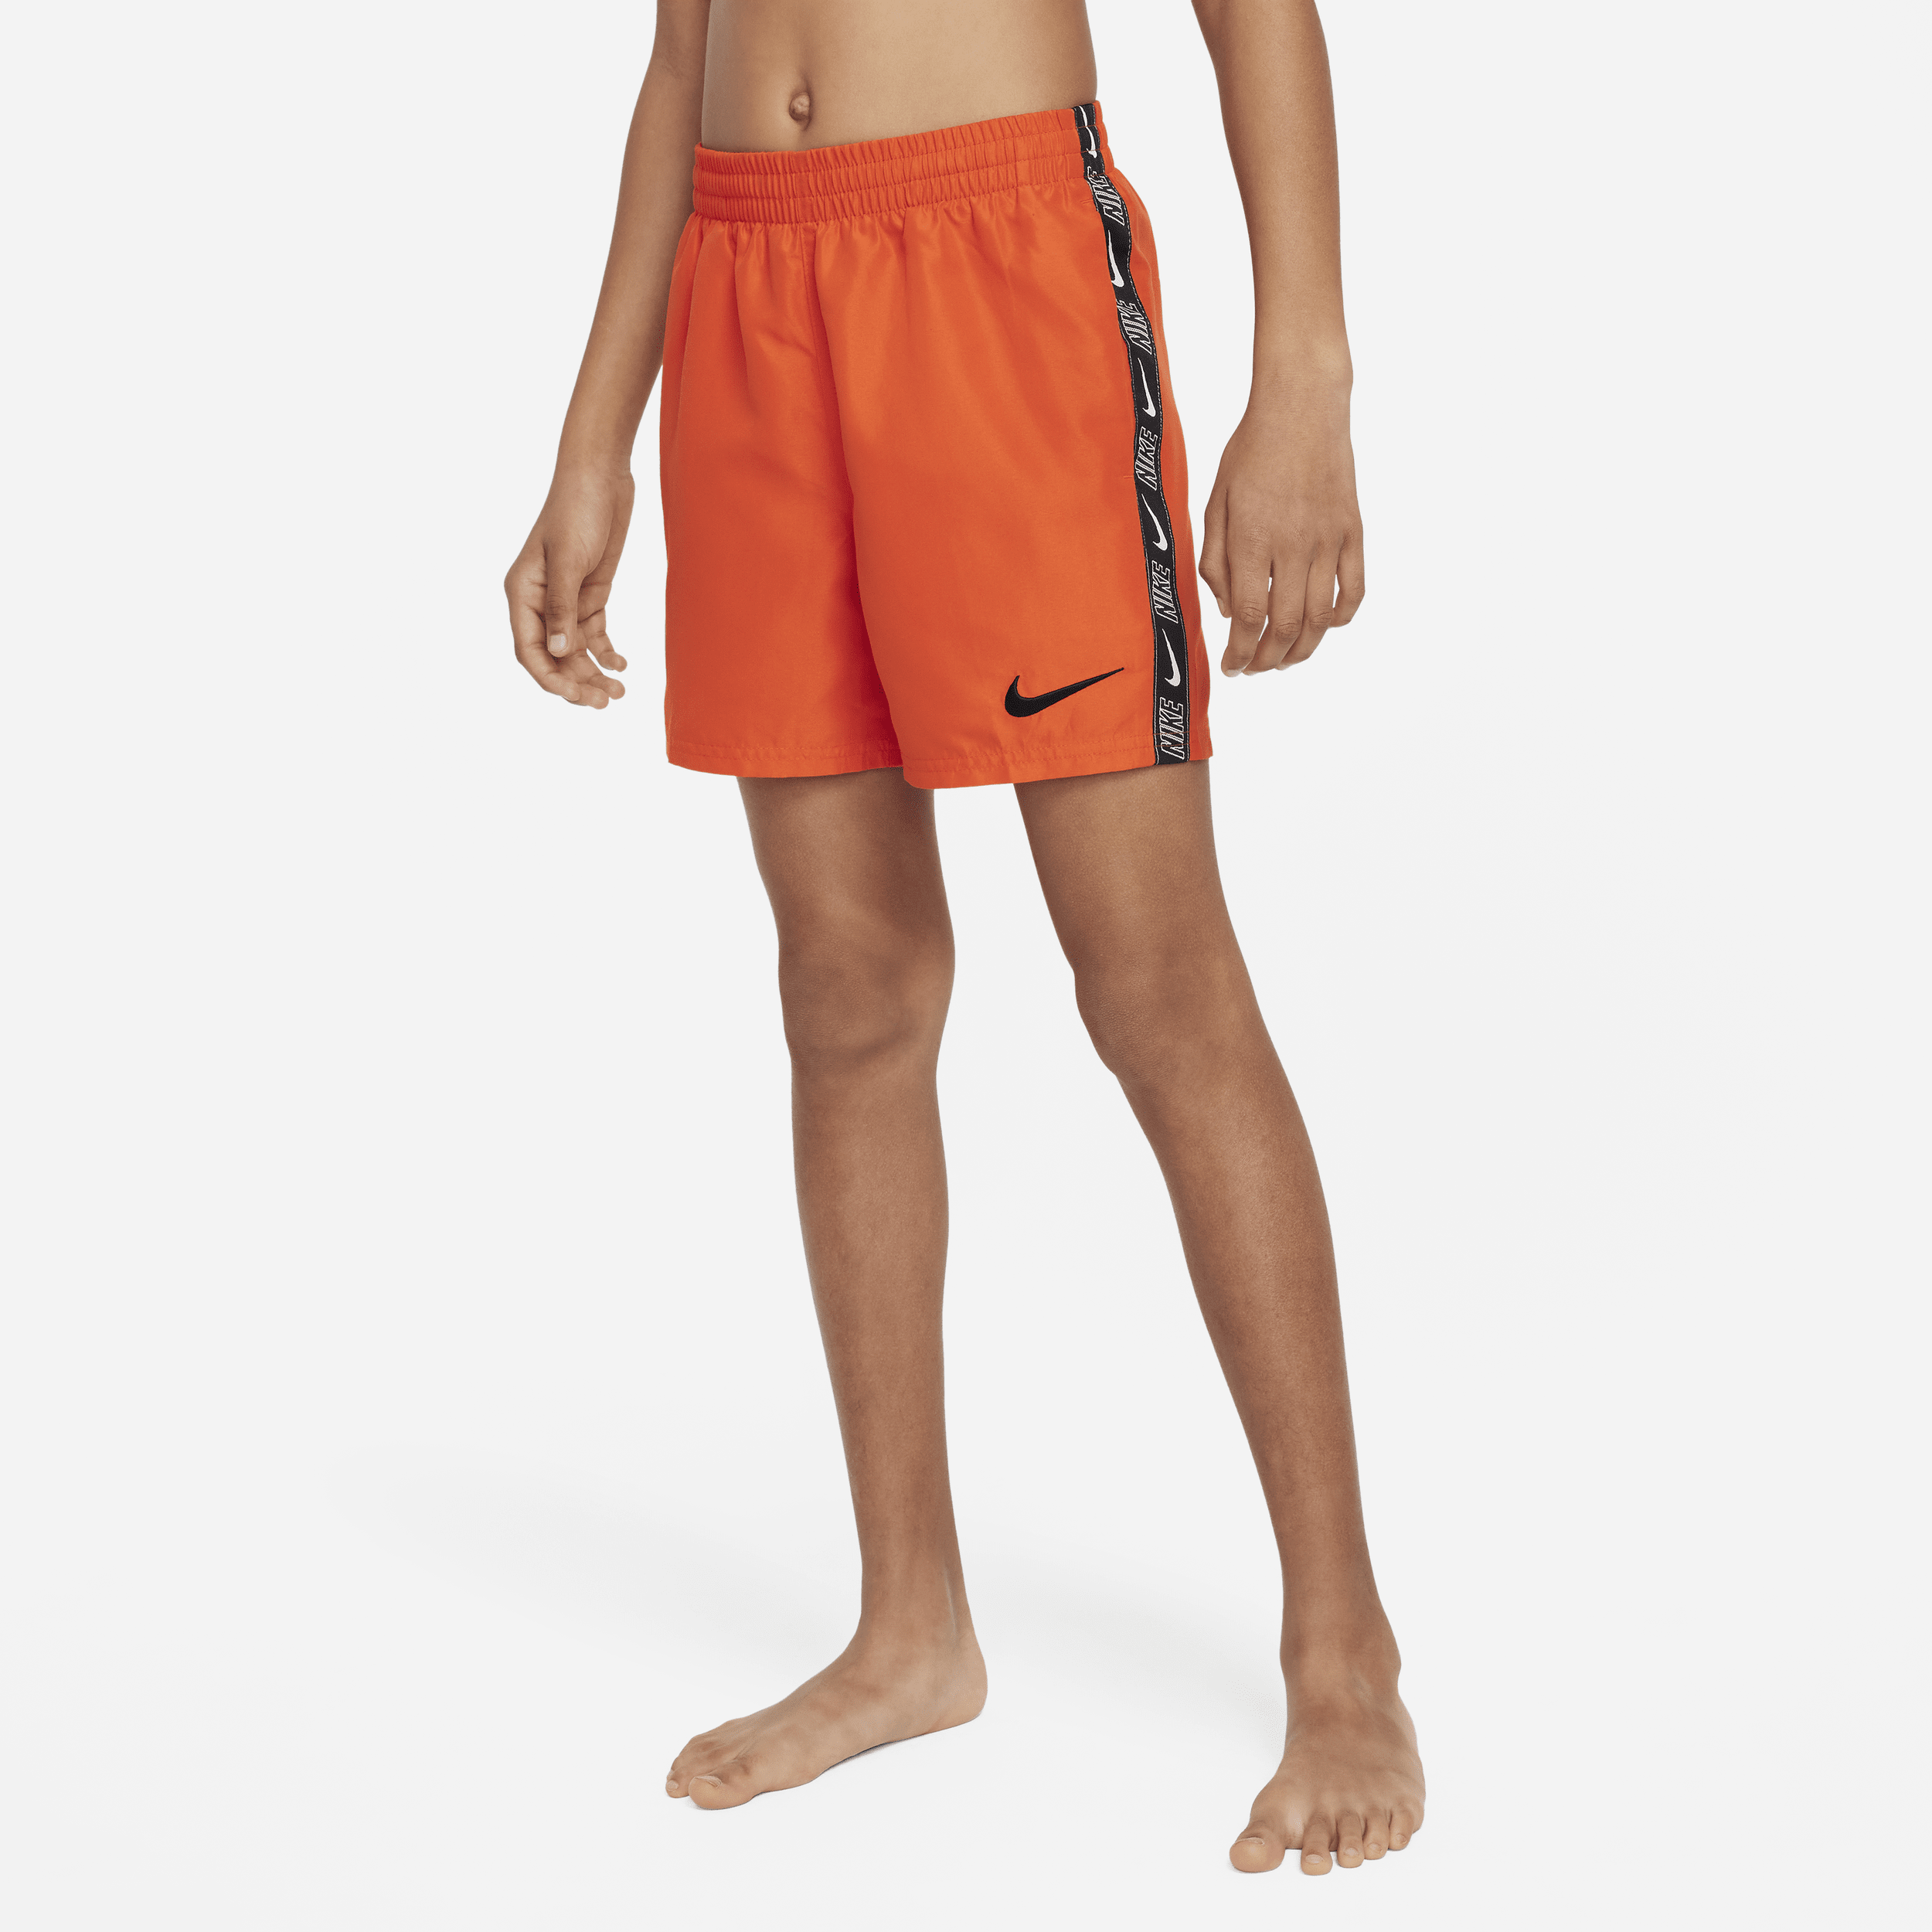 Nike-Volley-badeshorts (10 cm) til større børn (drenge) - rød